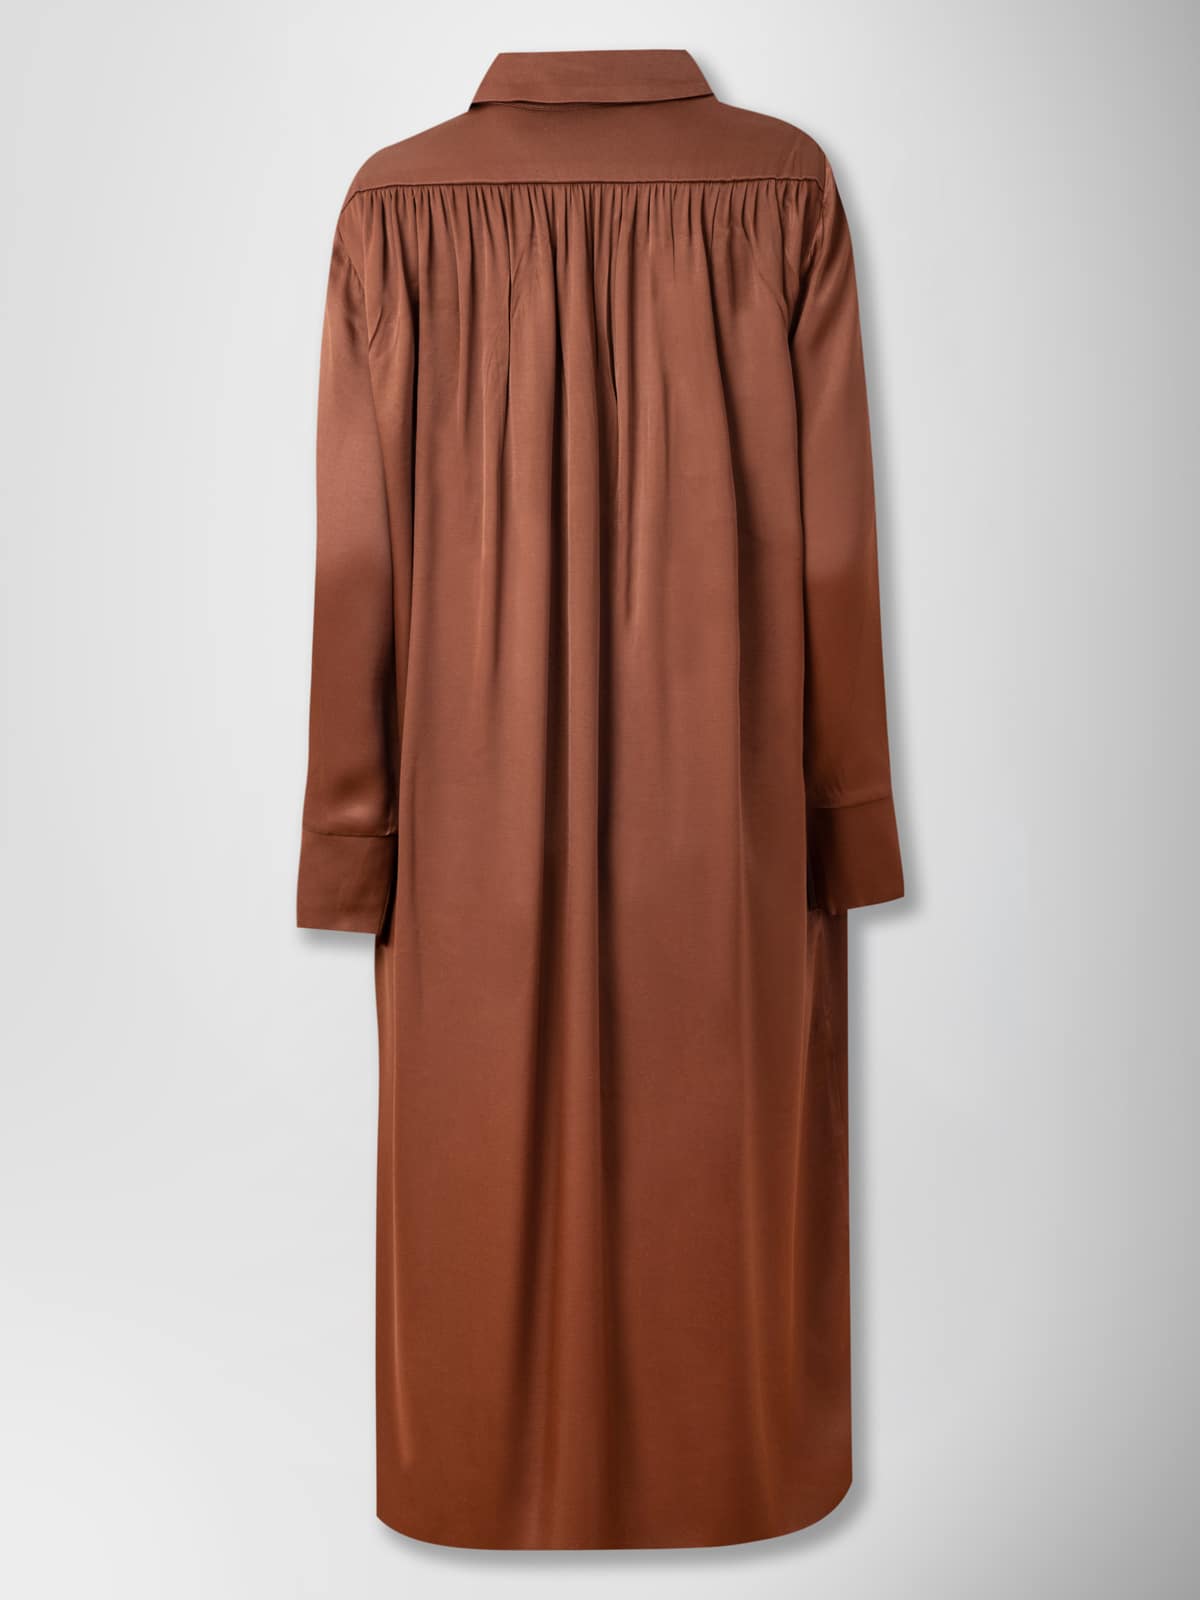 70's SHIRT DRESS BROWN